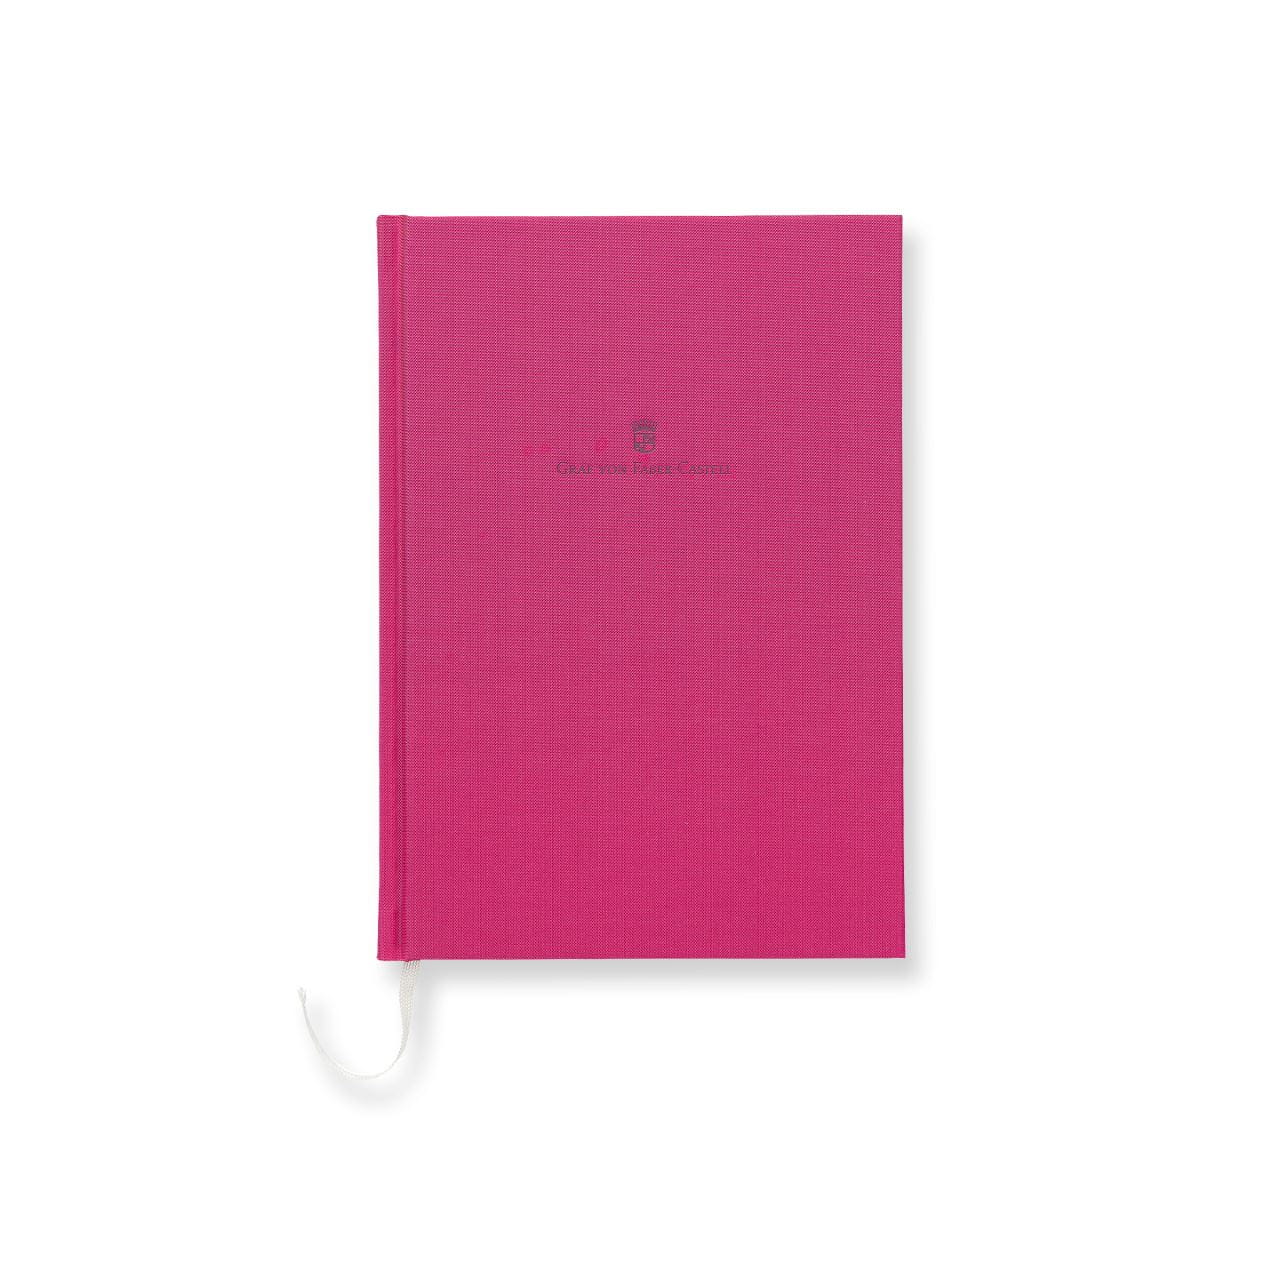 Graf-von-Faber-Castell - Buch mit Leineneinband A5 Electric Pink